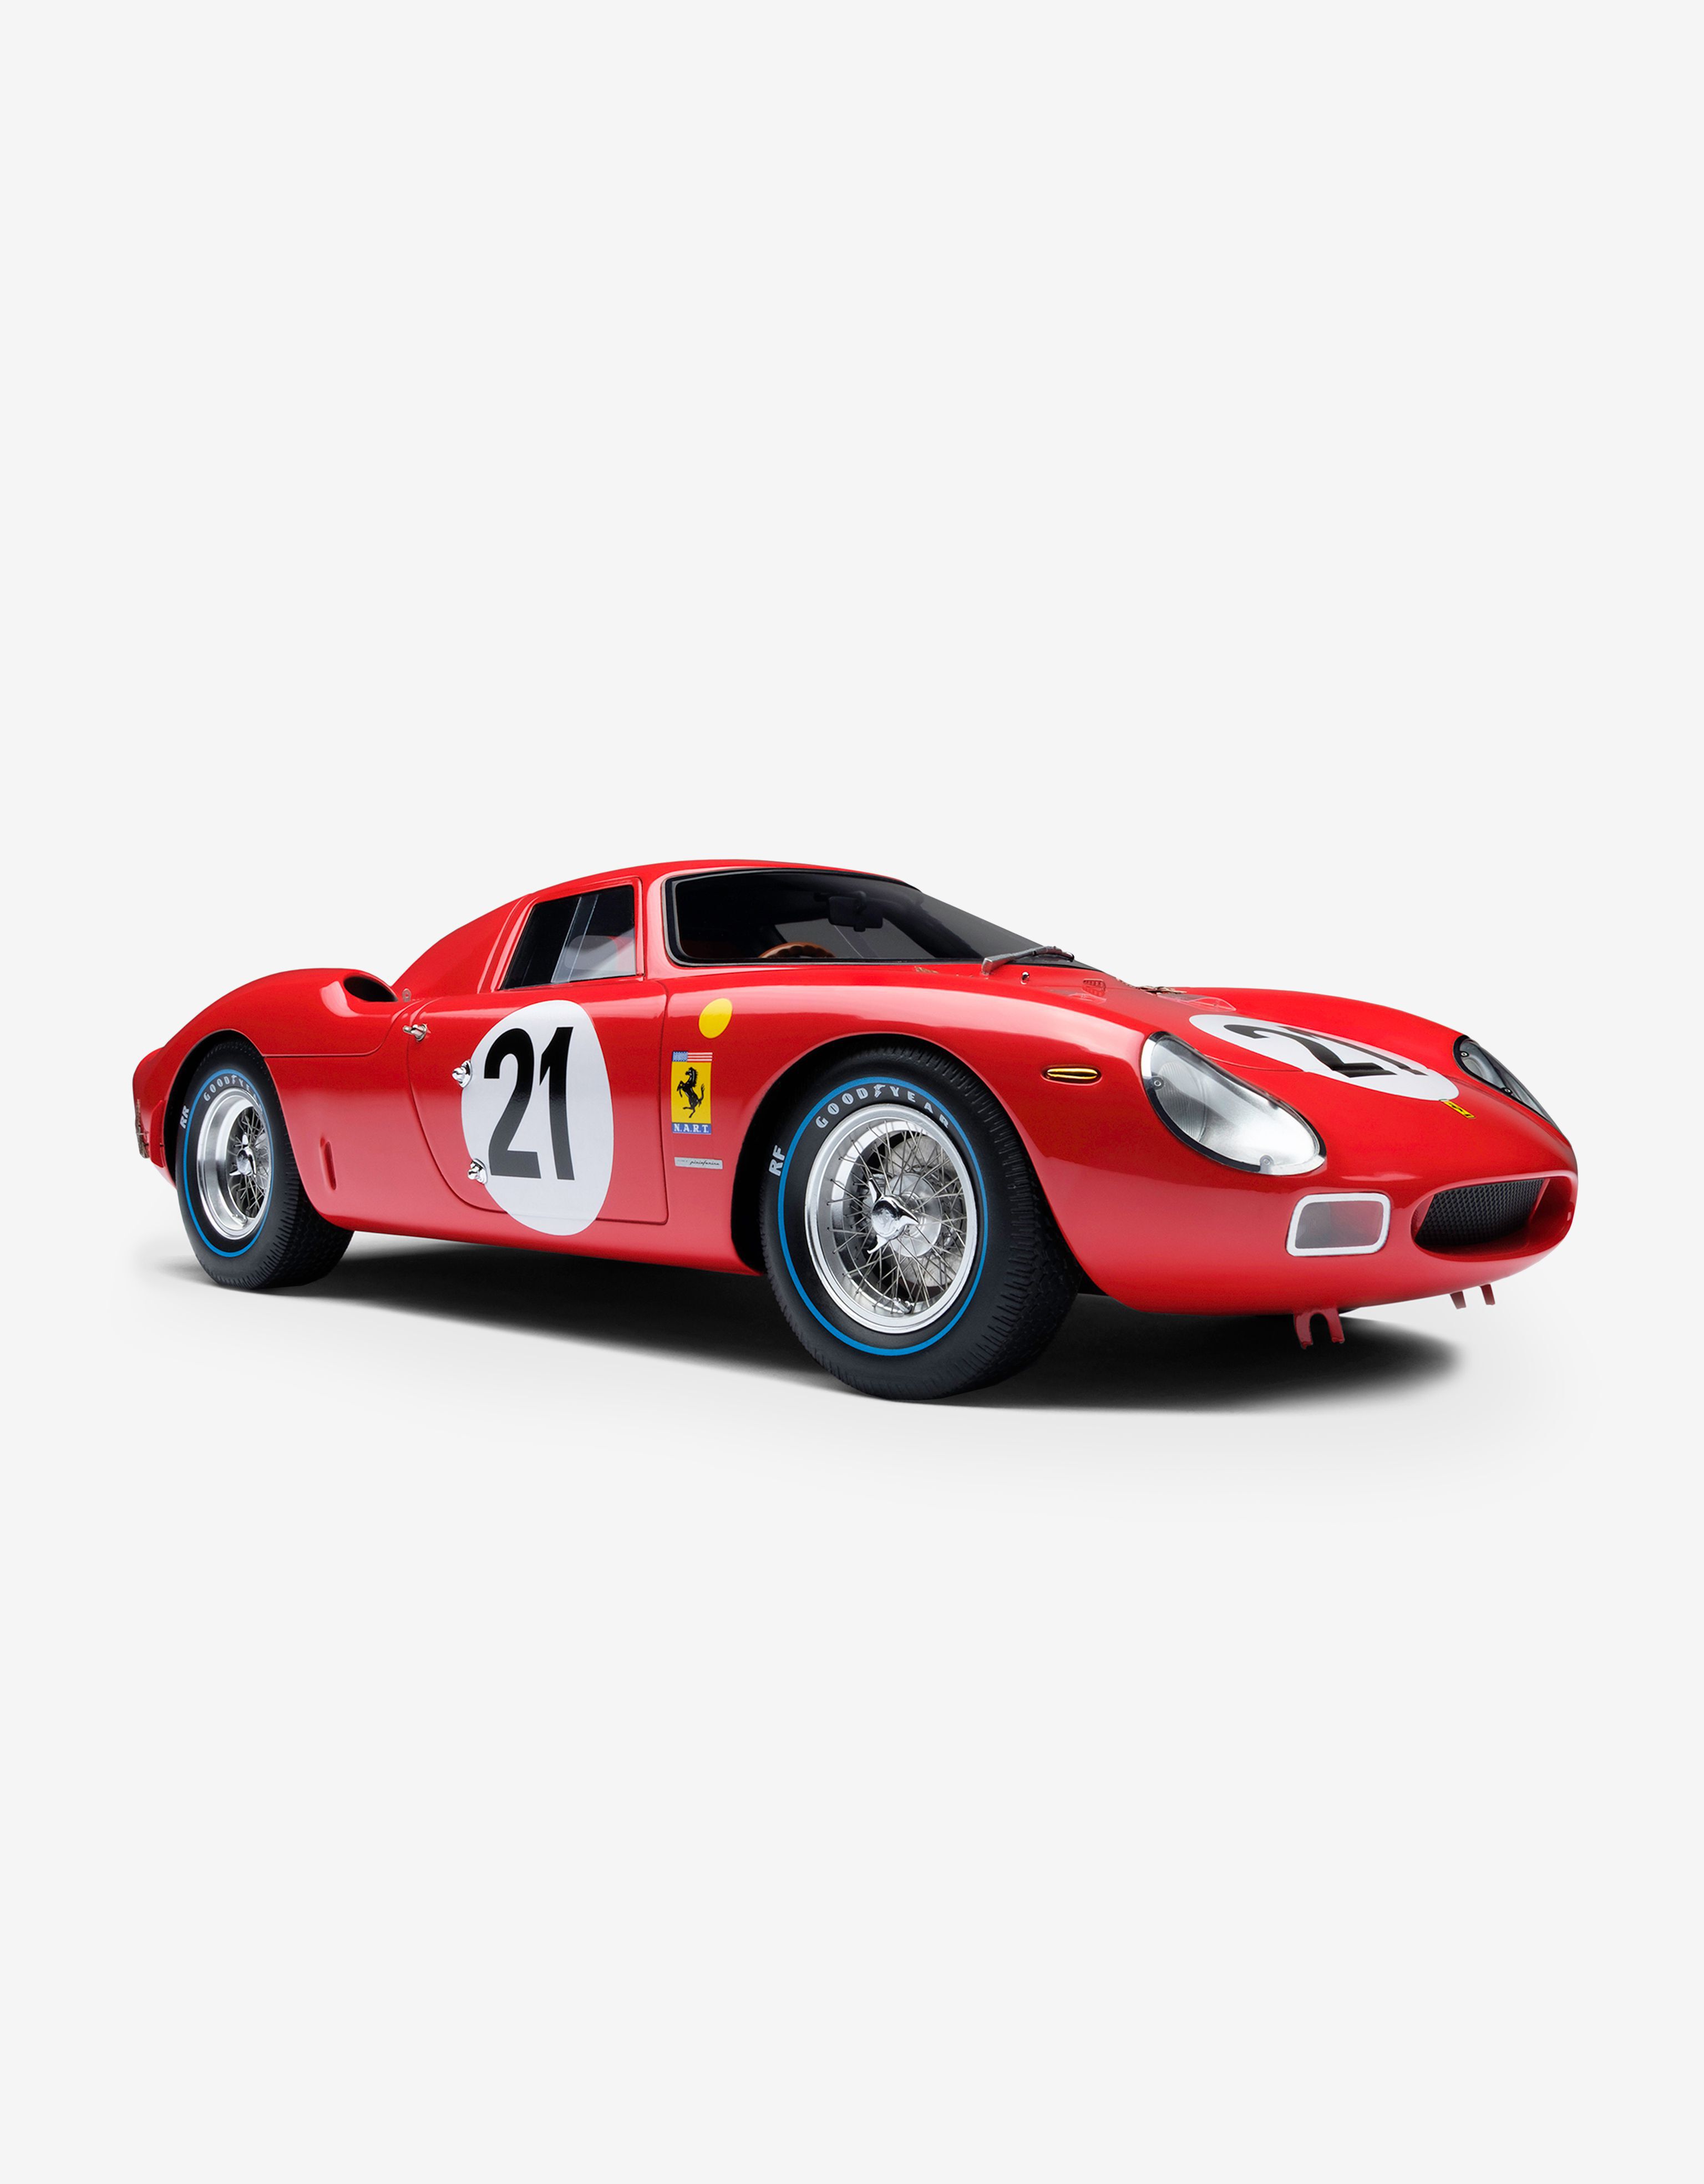 Ferrari Ferrari 250 LM 1965 Le Mans model in 1:18 scale Rosso Corsa 20168f